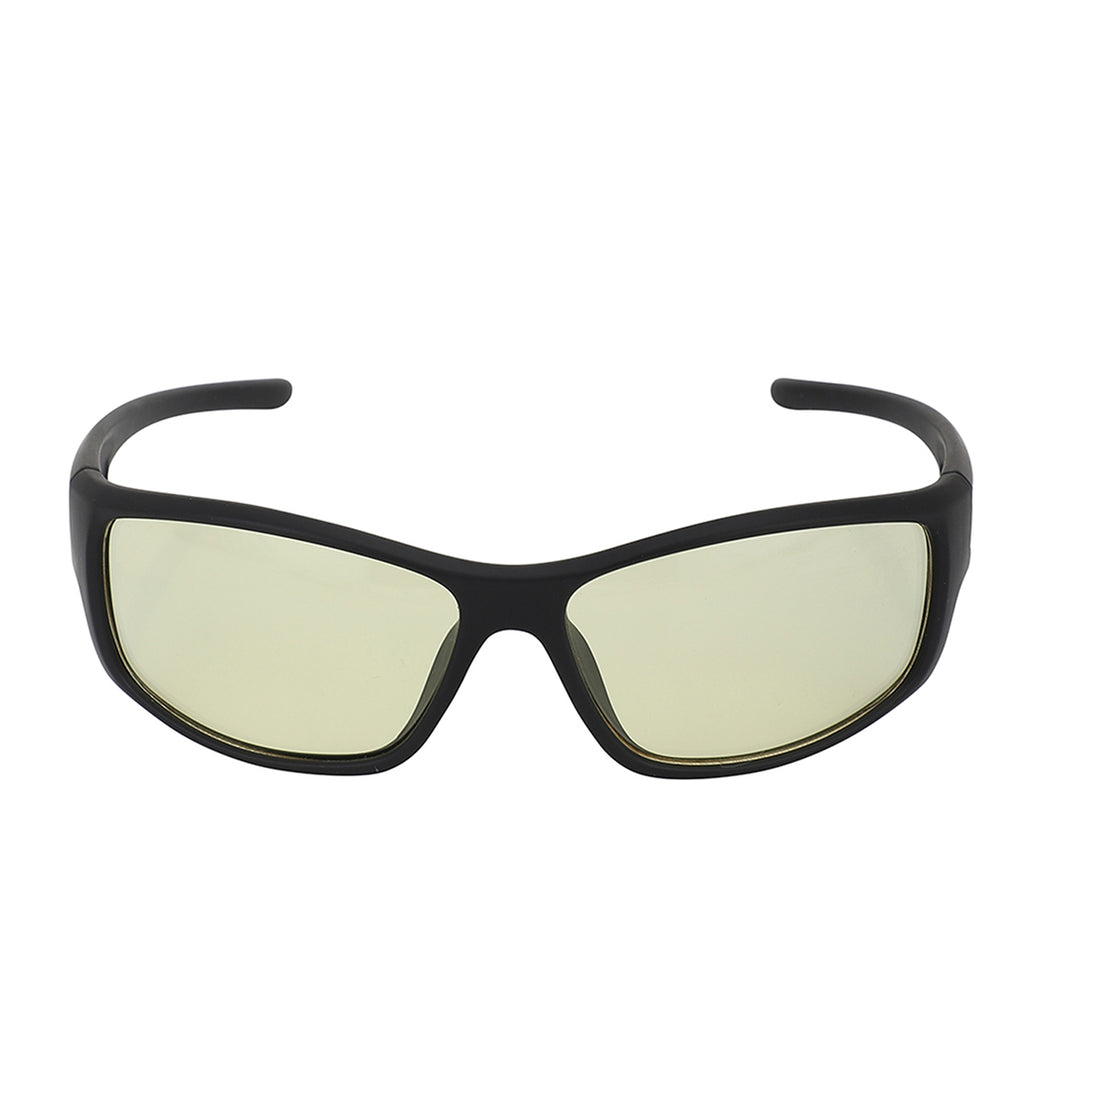 Carlton London Black Toned Uv Protected Sports Sunglasses For Men